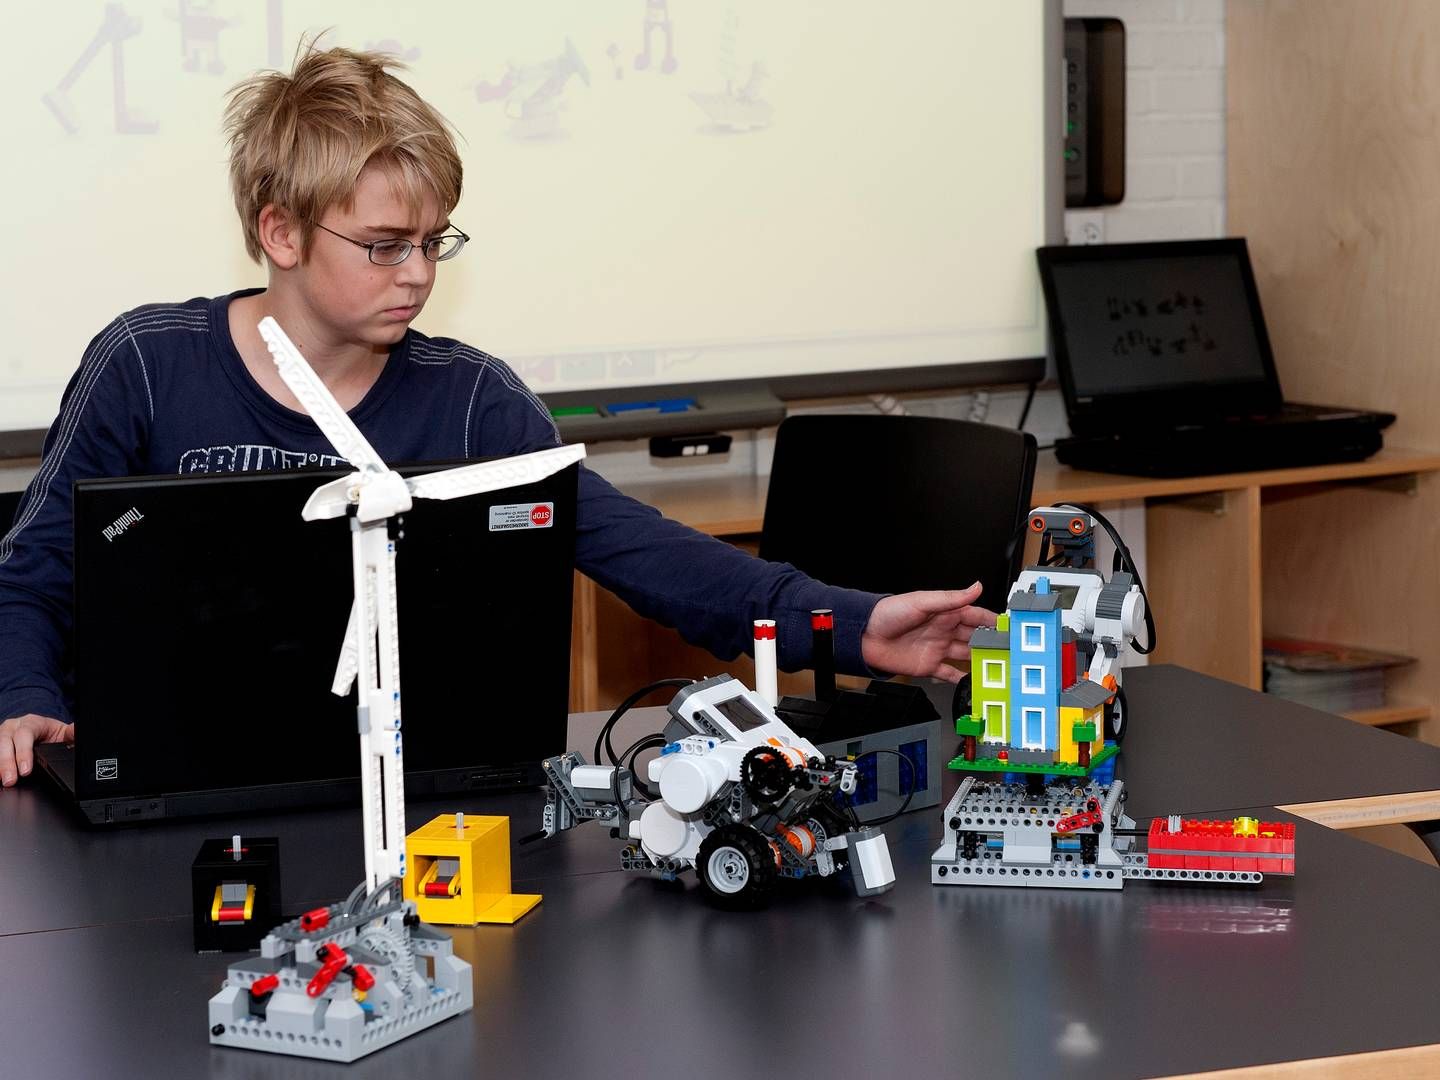 Lego Fonden uddeler penge til projekter over hele verden målrettet børn, familier og lærere. | Foto: Carsten Andreasen